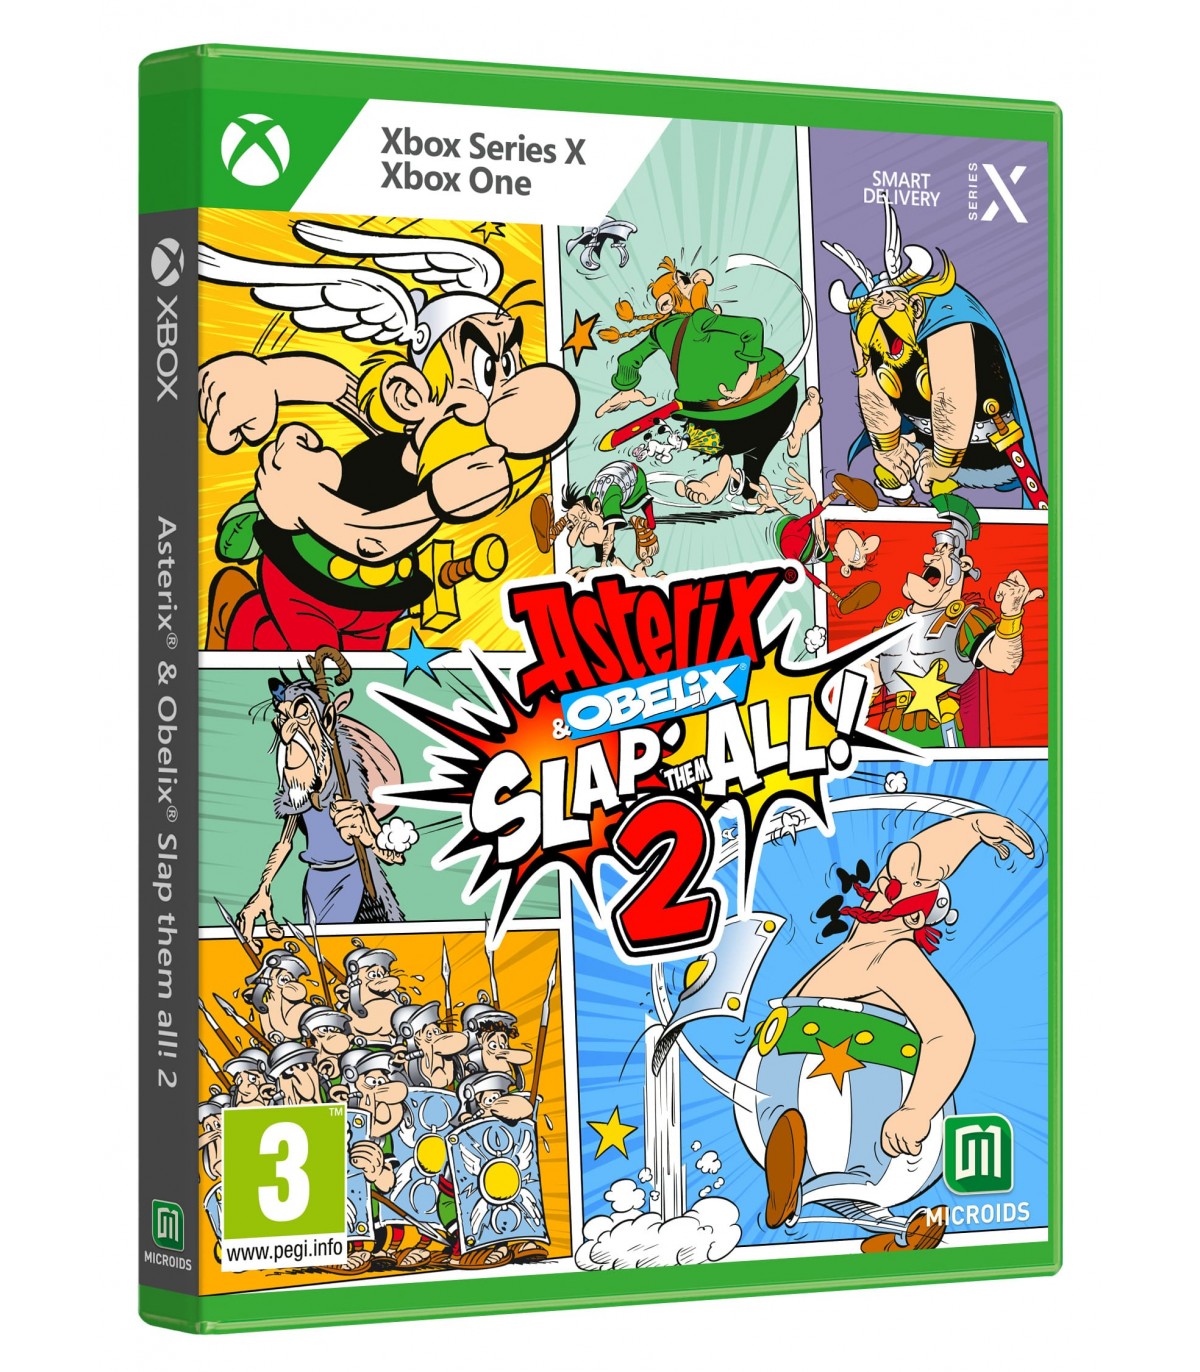 Xbox Series X Asterix & Obelix Slap Them All 2 - Disponibile in 2/3 giorni lavorativi